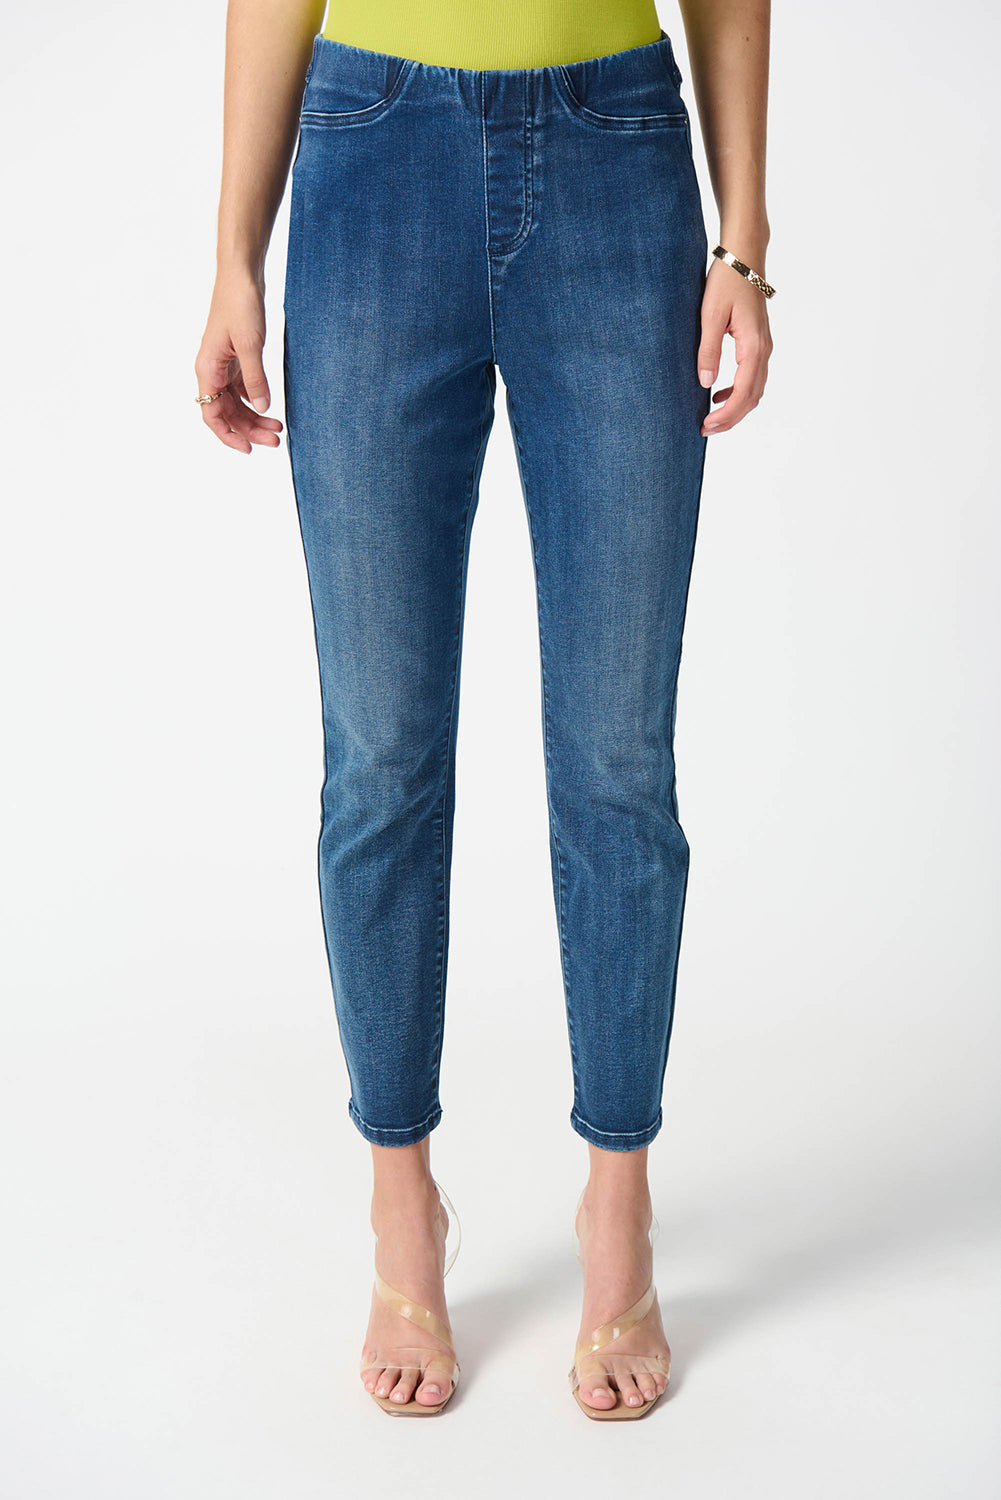 Joseph Ribkoff Denim Slim Fit Pull-On Jeans Denim Slim Fit Pull-On Jeans Jr242924